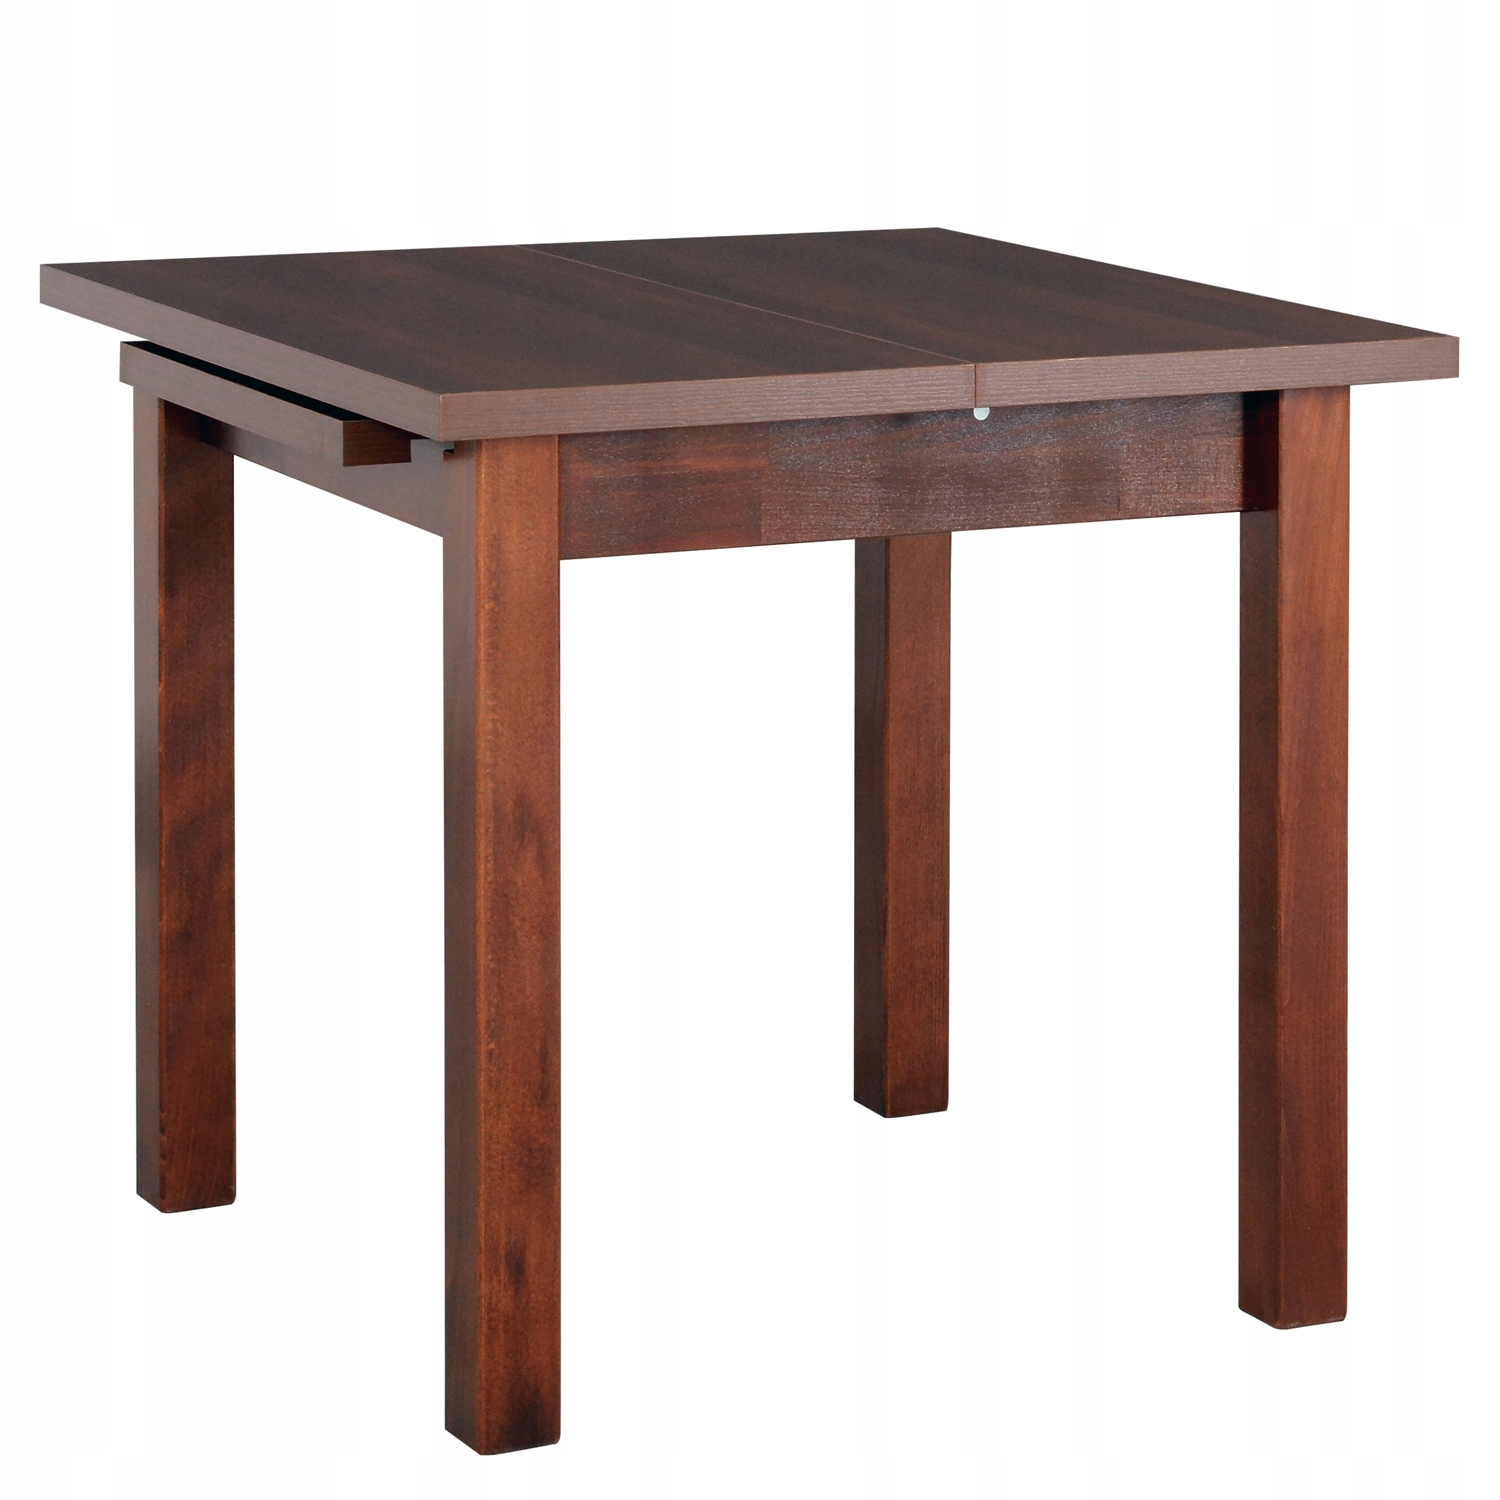 Кухонный стол 80 см. Обеденный стол Drewmix Max 4 s. Стол раскладной квадратный 90х90 ФС 02.28. Стол 80 80 раскладной. Стол 90х90 раздвижной обеденный Oregon.